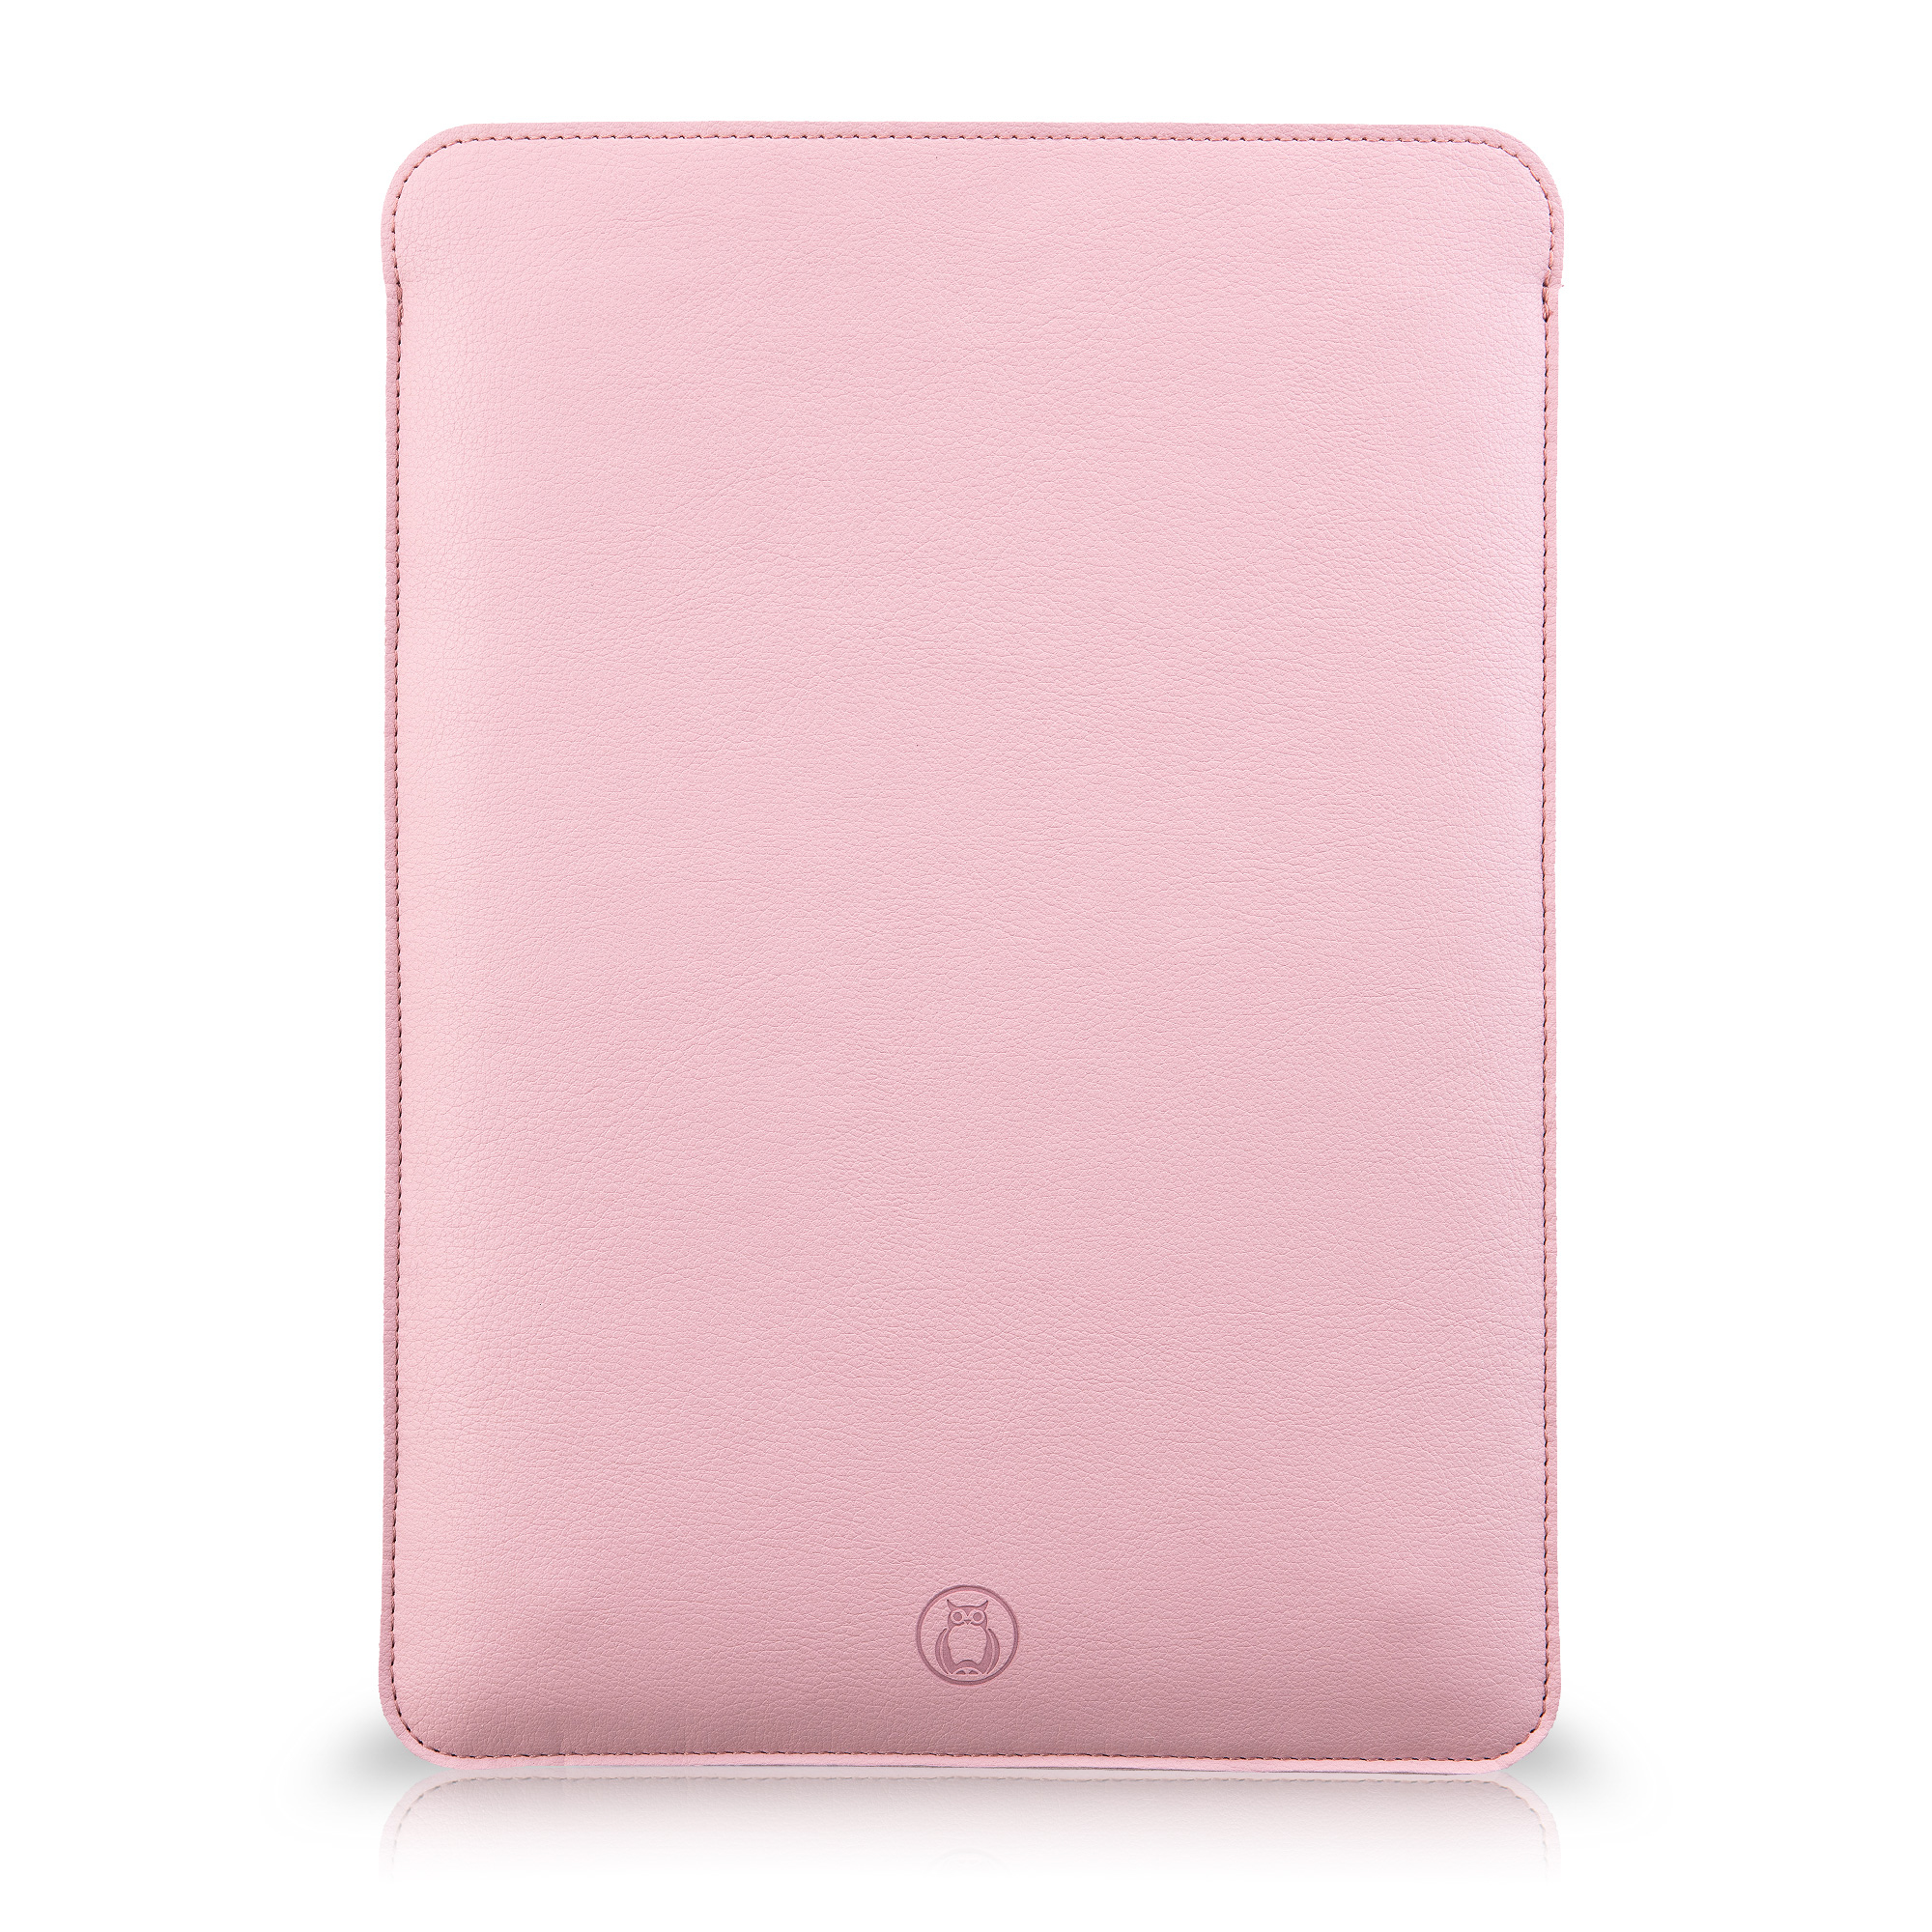 Husa laptop MacBook 13 inch UNIKA piele PU cu lana din fibre naturale roz sanito.ro